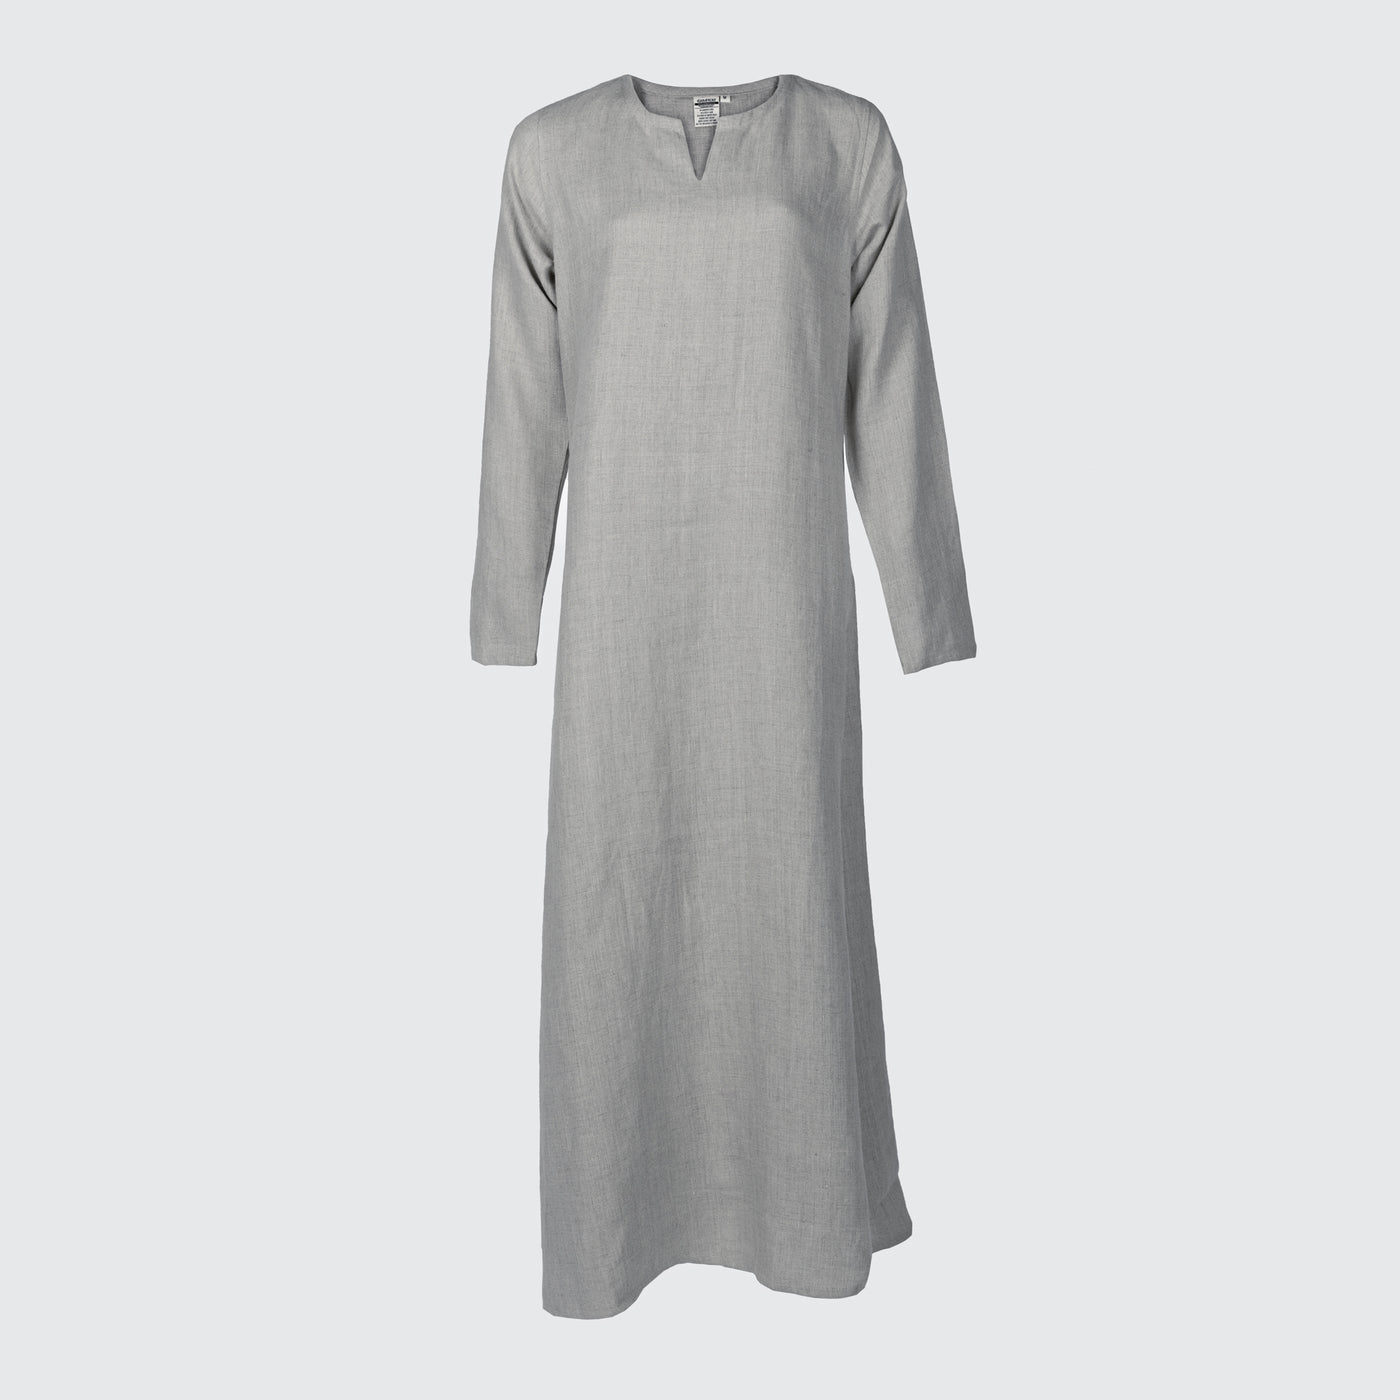 Viking Dress, Linen